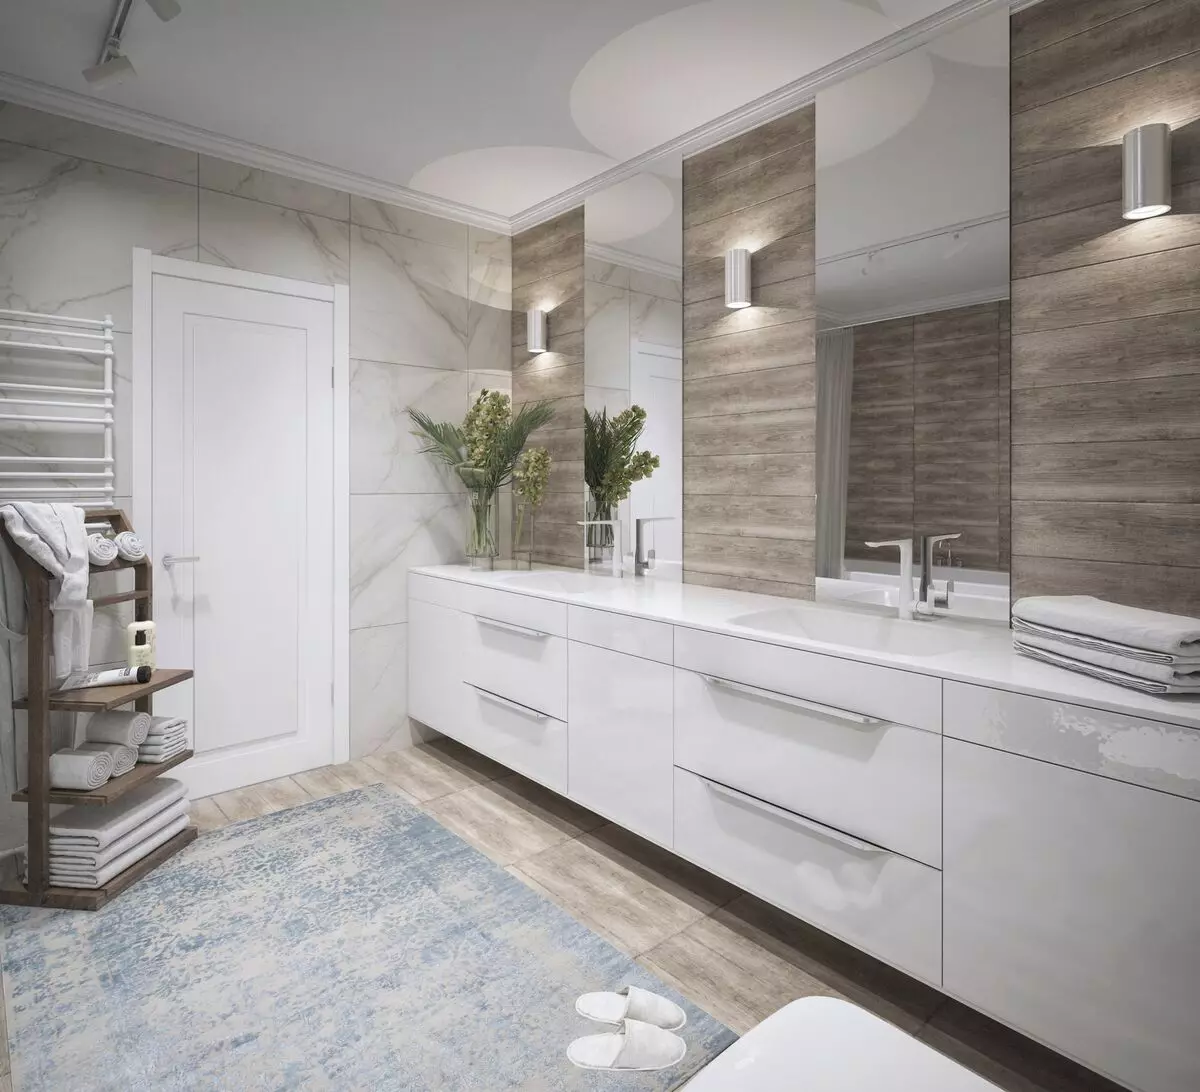 대리석 욕실 (98 장의 사진) : 방의 대리석 목욕탕, 욕실의 흰색 대리석과 나무의 조합, 인테리어의 예 10185_33